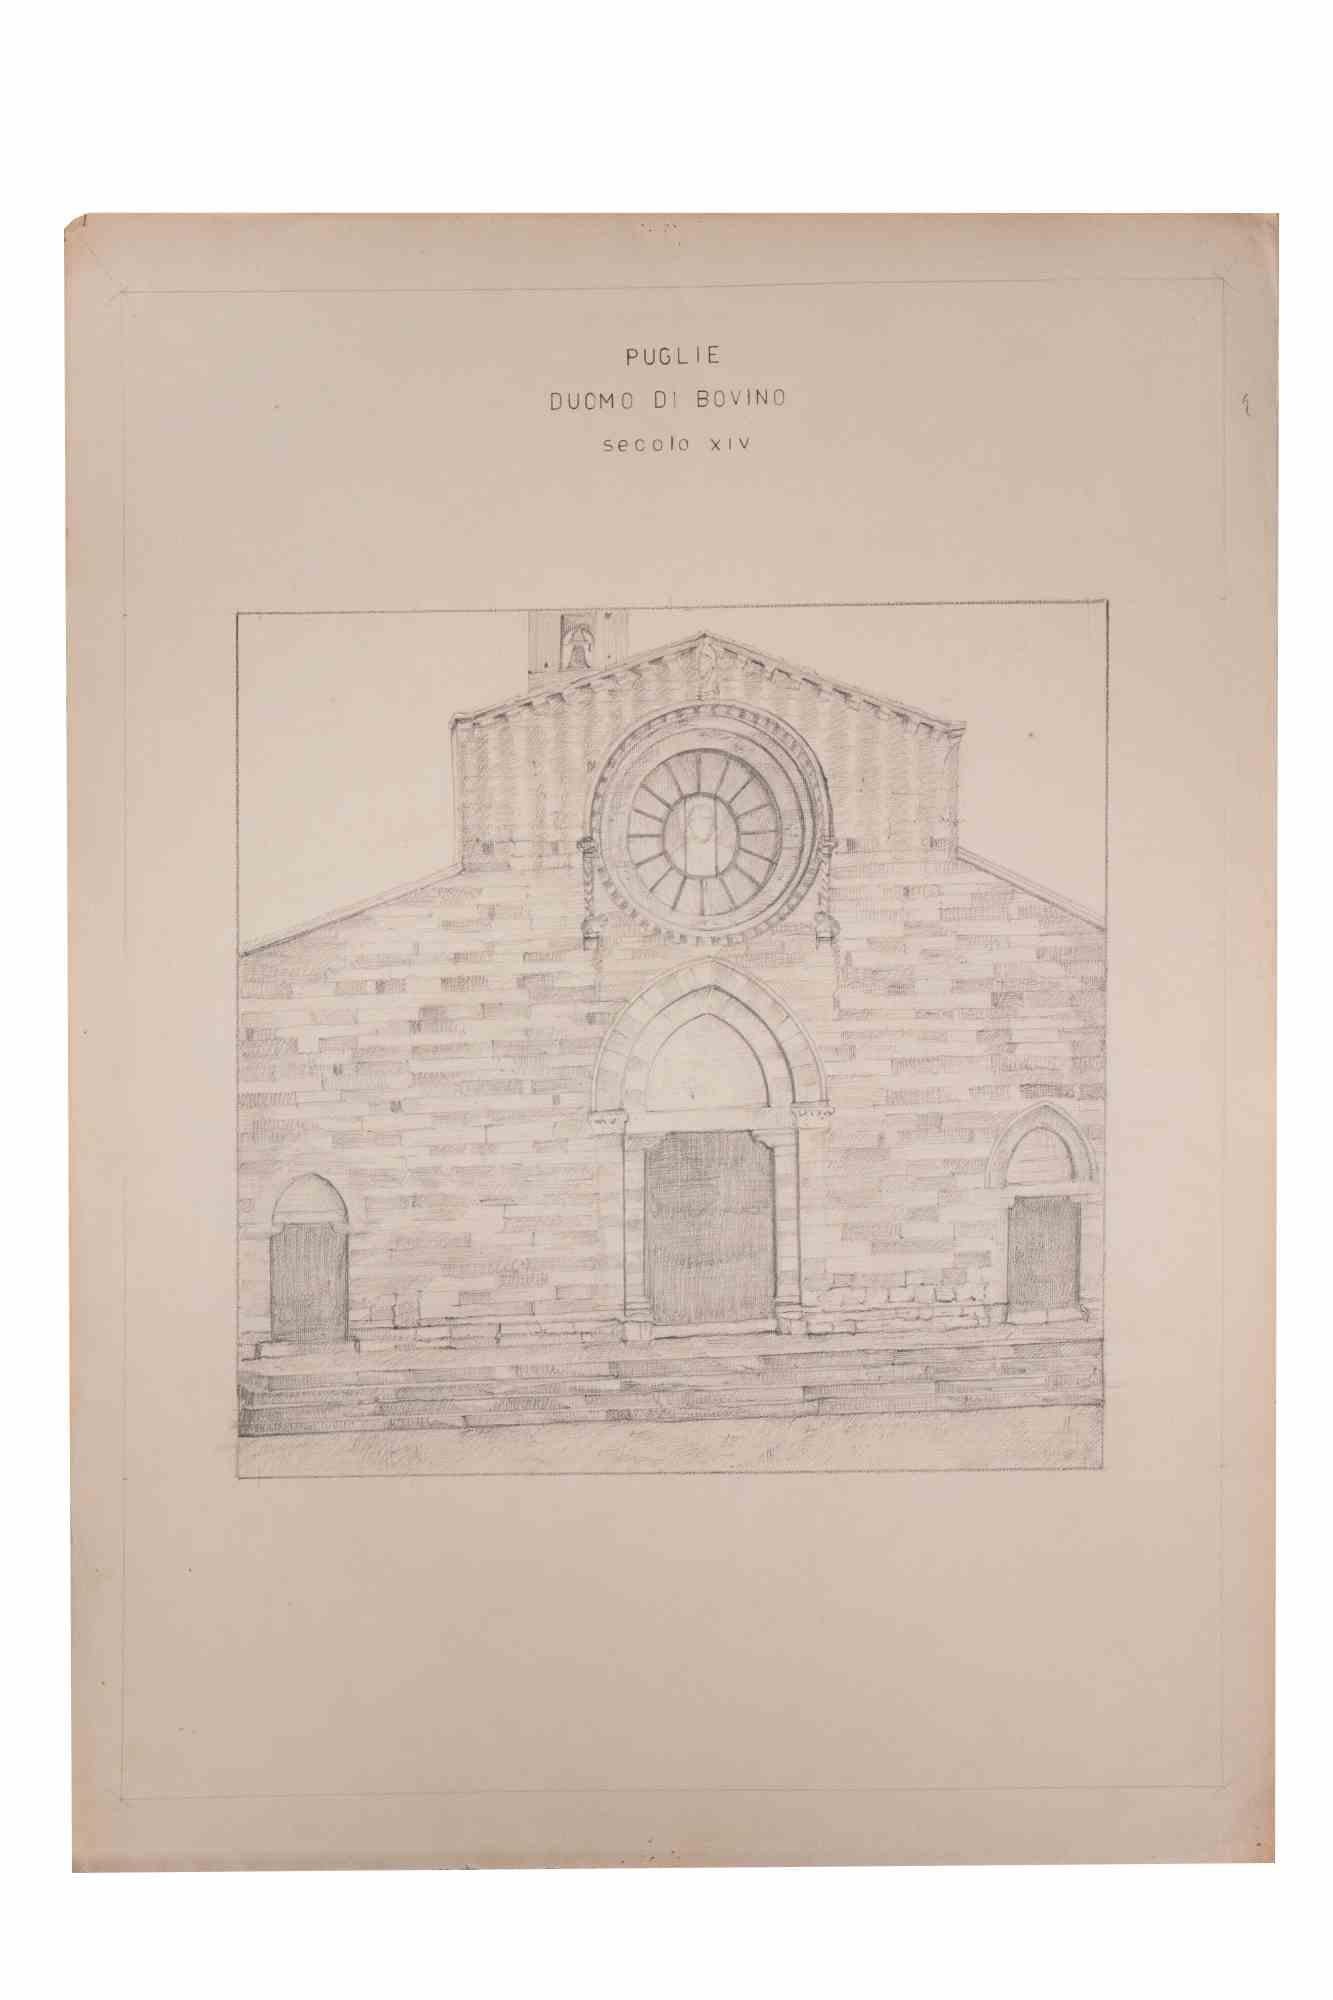 Der Duomo di Bovino (Secolo XIV) ist ein Kunstwerk des italienischen Künstlers Aurelio Mistruzzi aus dem Jahr 1905.

Bleistift-Zeichnung auf Papier .

Gute Bedingungen.

Aurelio Mistruzzi (1880-1960) studierte an der Kunstschule von Udine und hatte